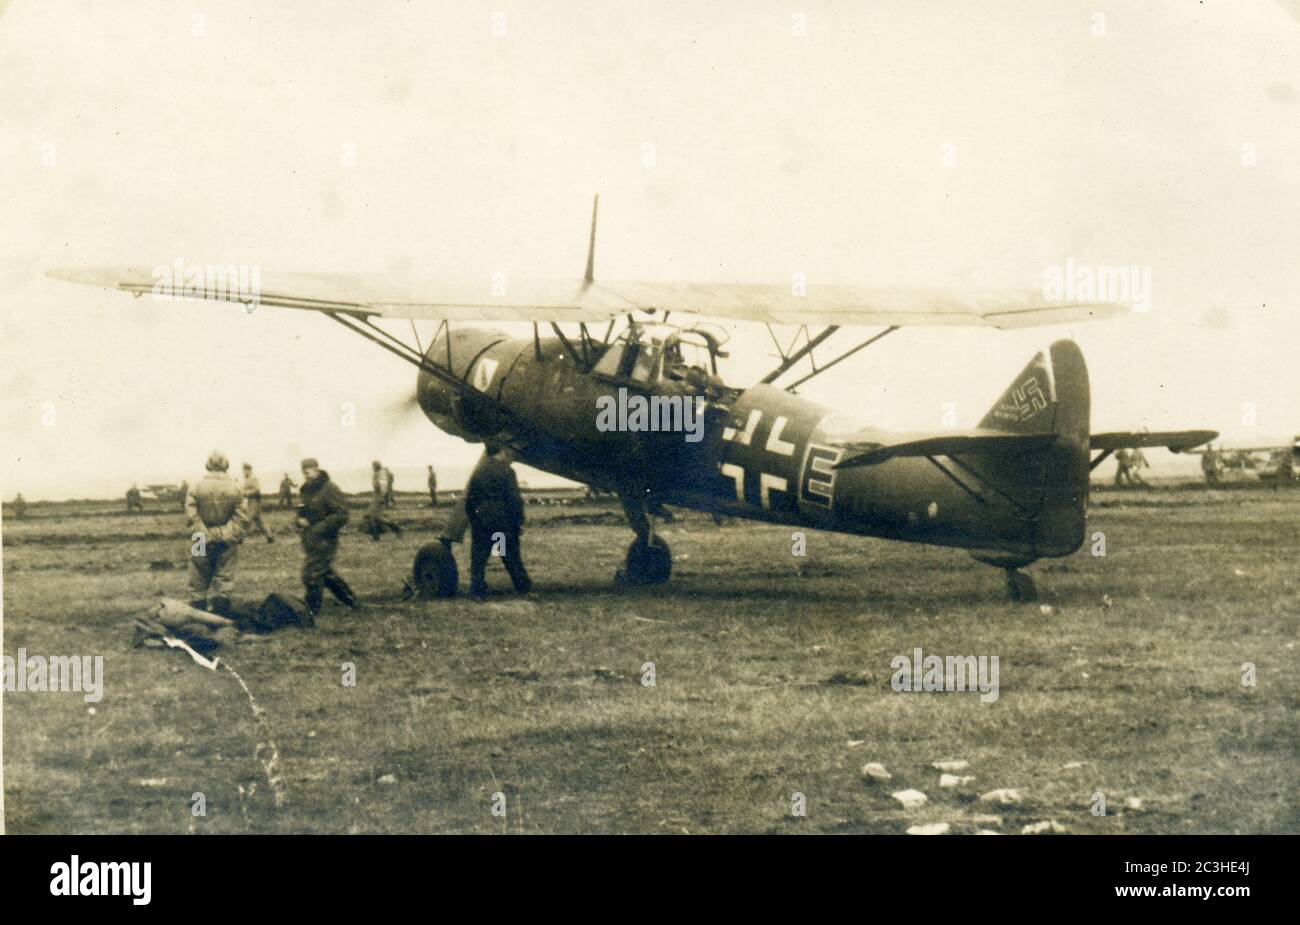 Seconda guerra mondiale / seconda guerra mondiale - velivolo tedesco da ricognizione Henschel HS 126 , guerra aerea, probabilmente a nord della Francia o del Belgio Foto Stock